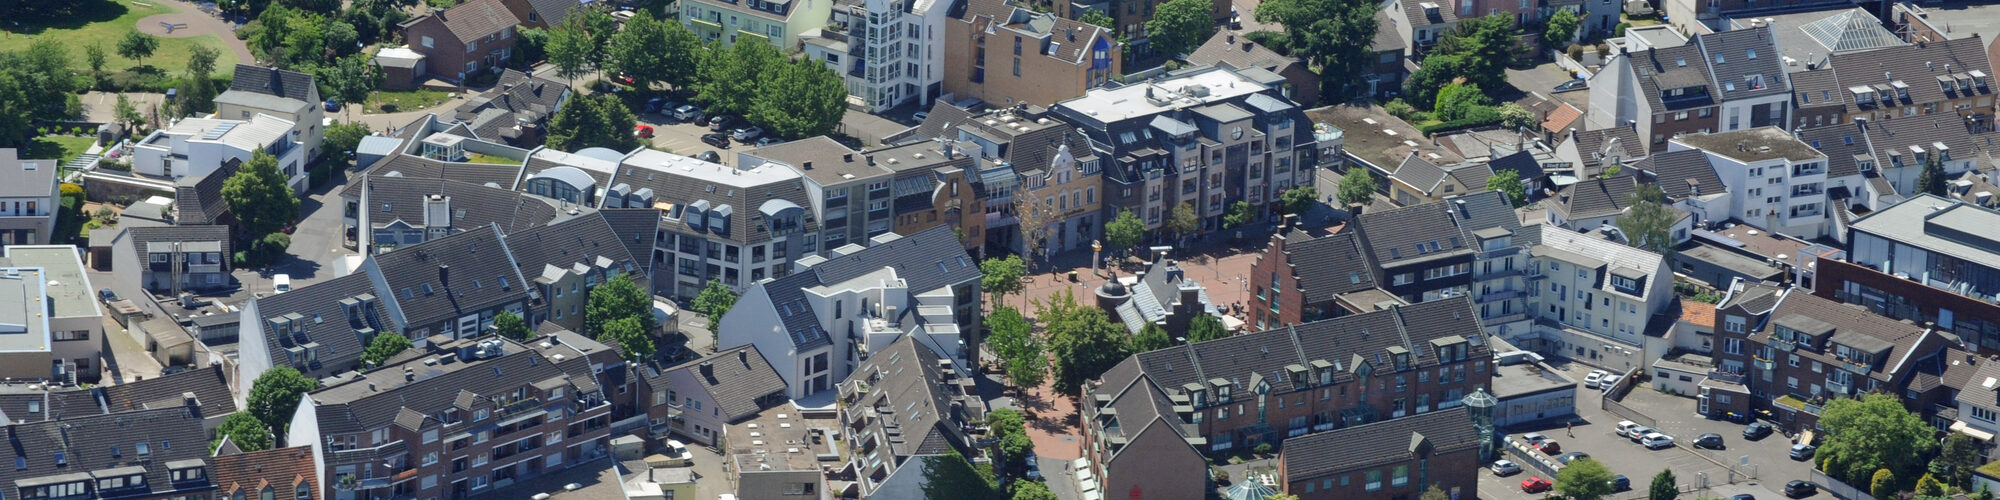 Luftbild Innenstadt Pulheim